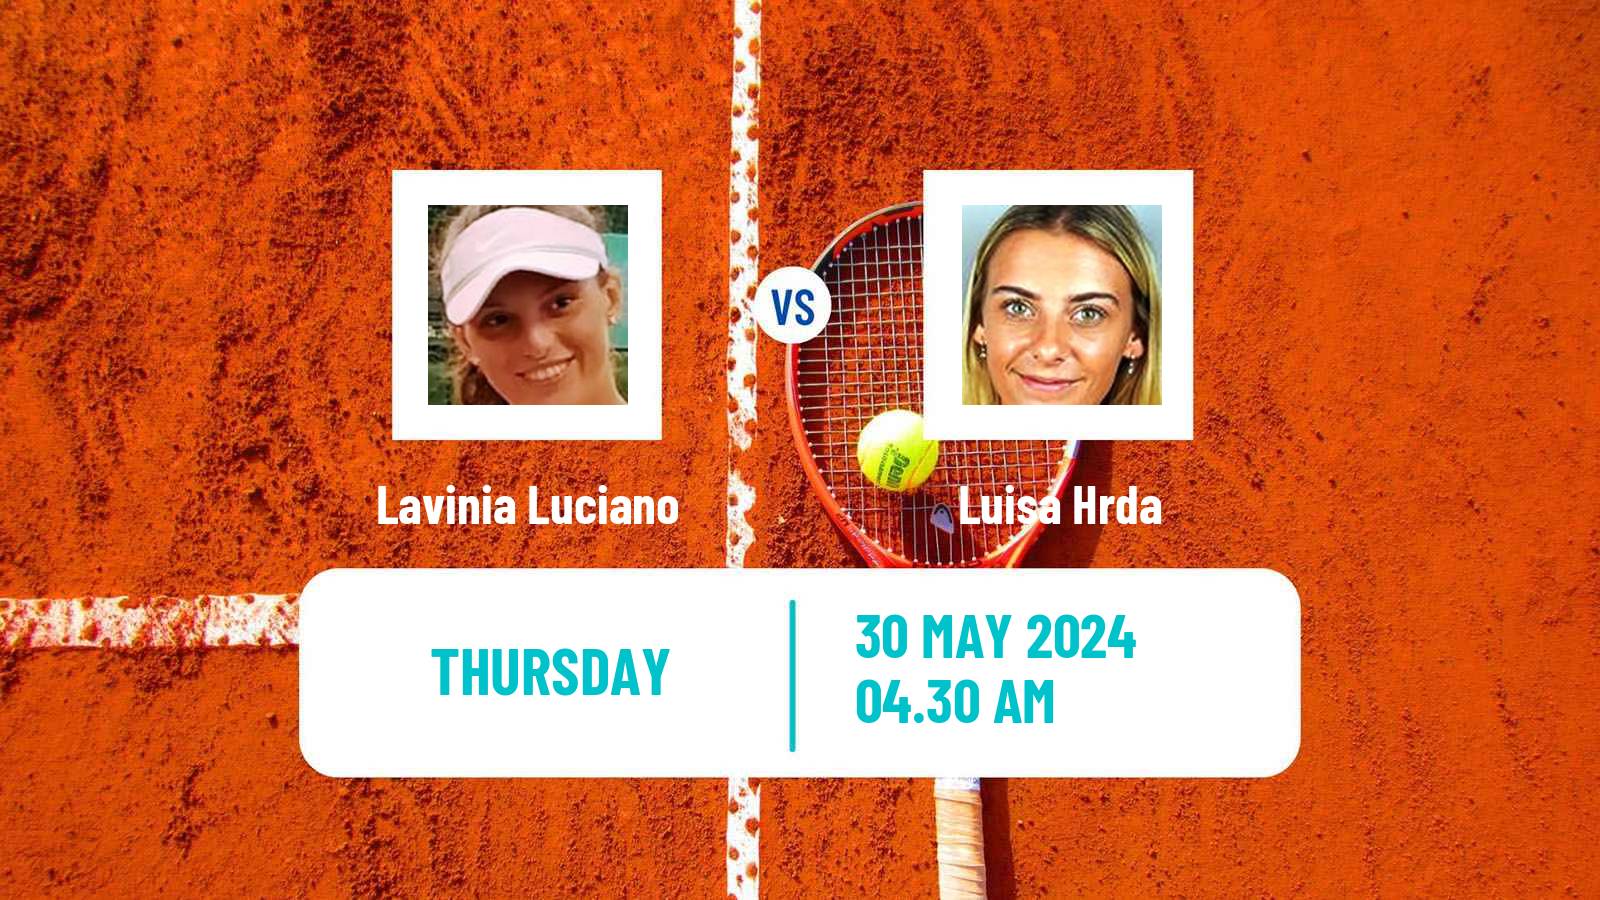 Tennis ITF W15 Galati Women Lavinia Luciano - Luisa Hrda